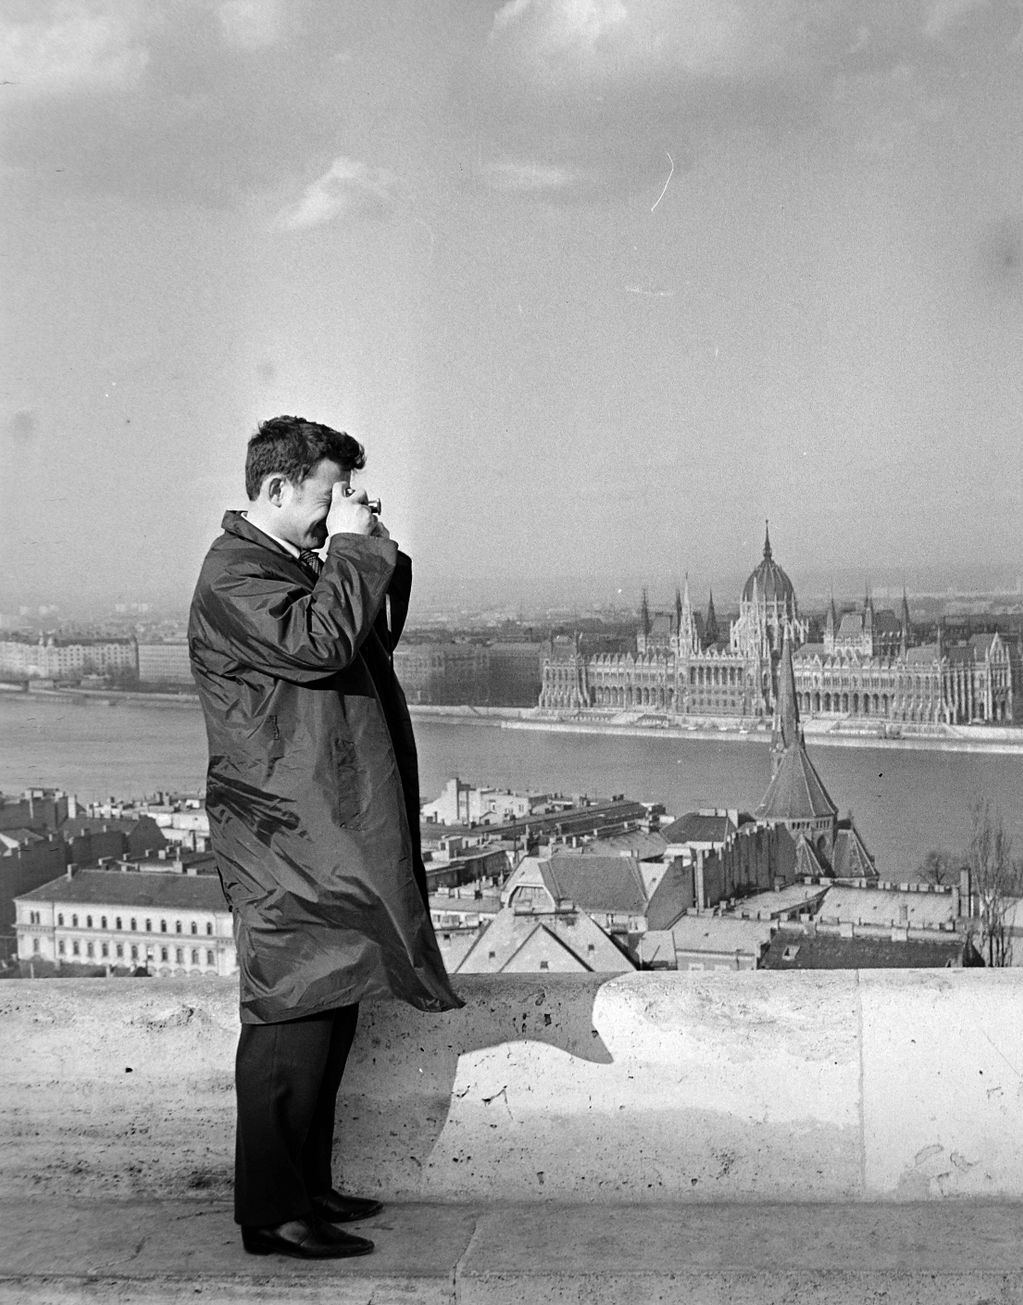 Hiánycikkek a szocialista Magyarországon (Galéria) orkán kabát 
Magyarország,
Budapest I.,
budai Vár,
Halászbástya
háttérben a Parlament.
ÉV
1964 